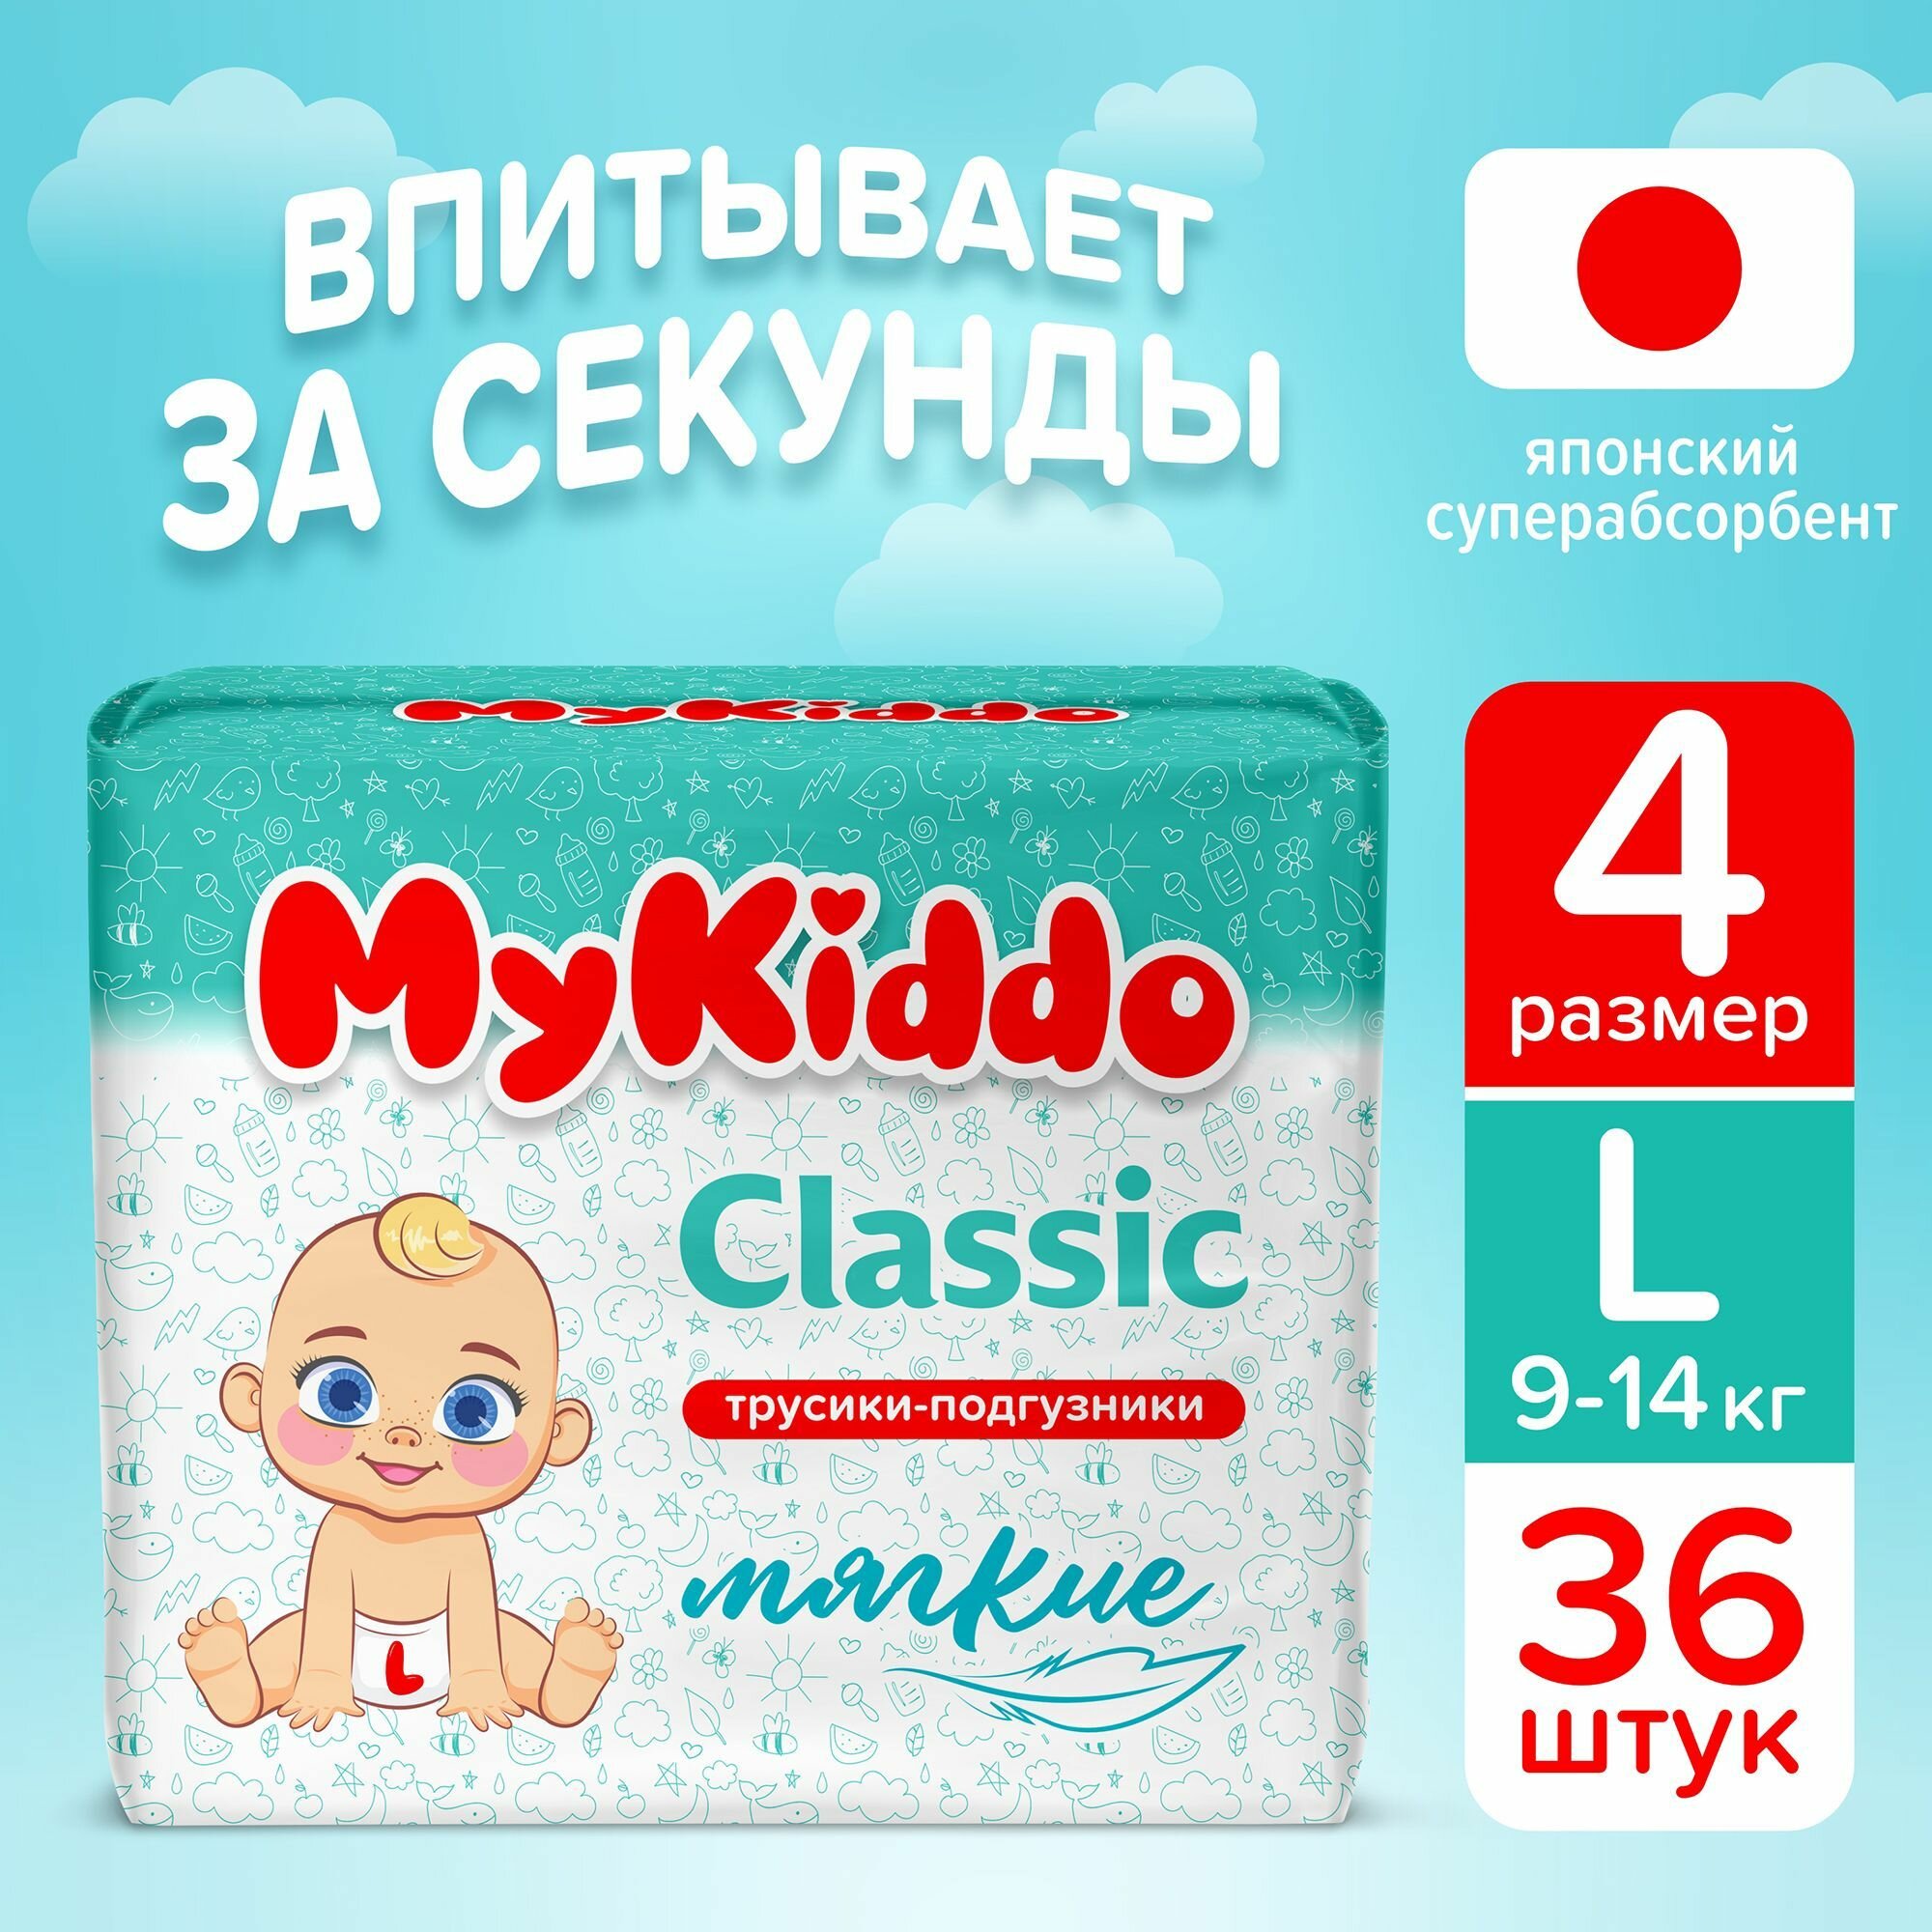 Подгузники трусики детские MyKiddo Classic размер 4 L, для детей весом 9-14 кг, в упаковке 36 шт.